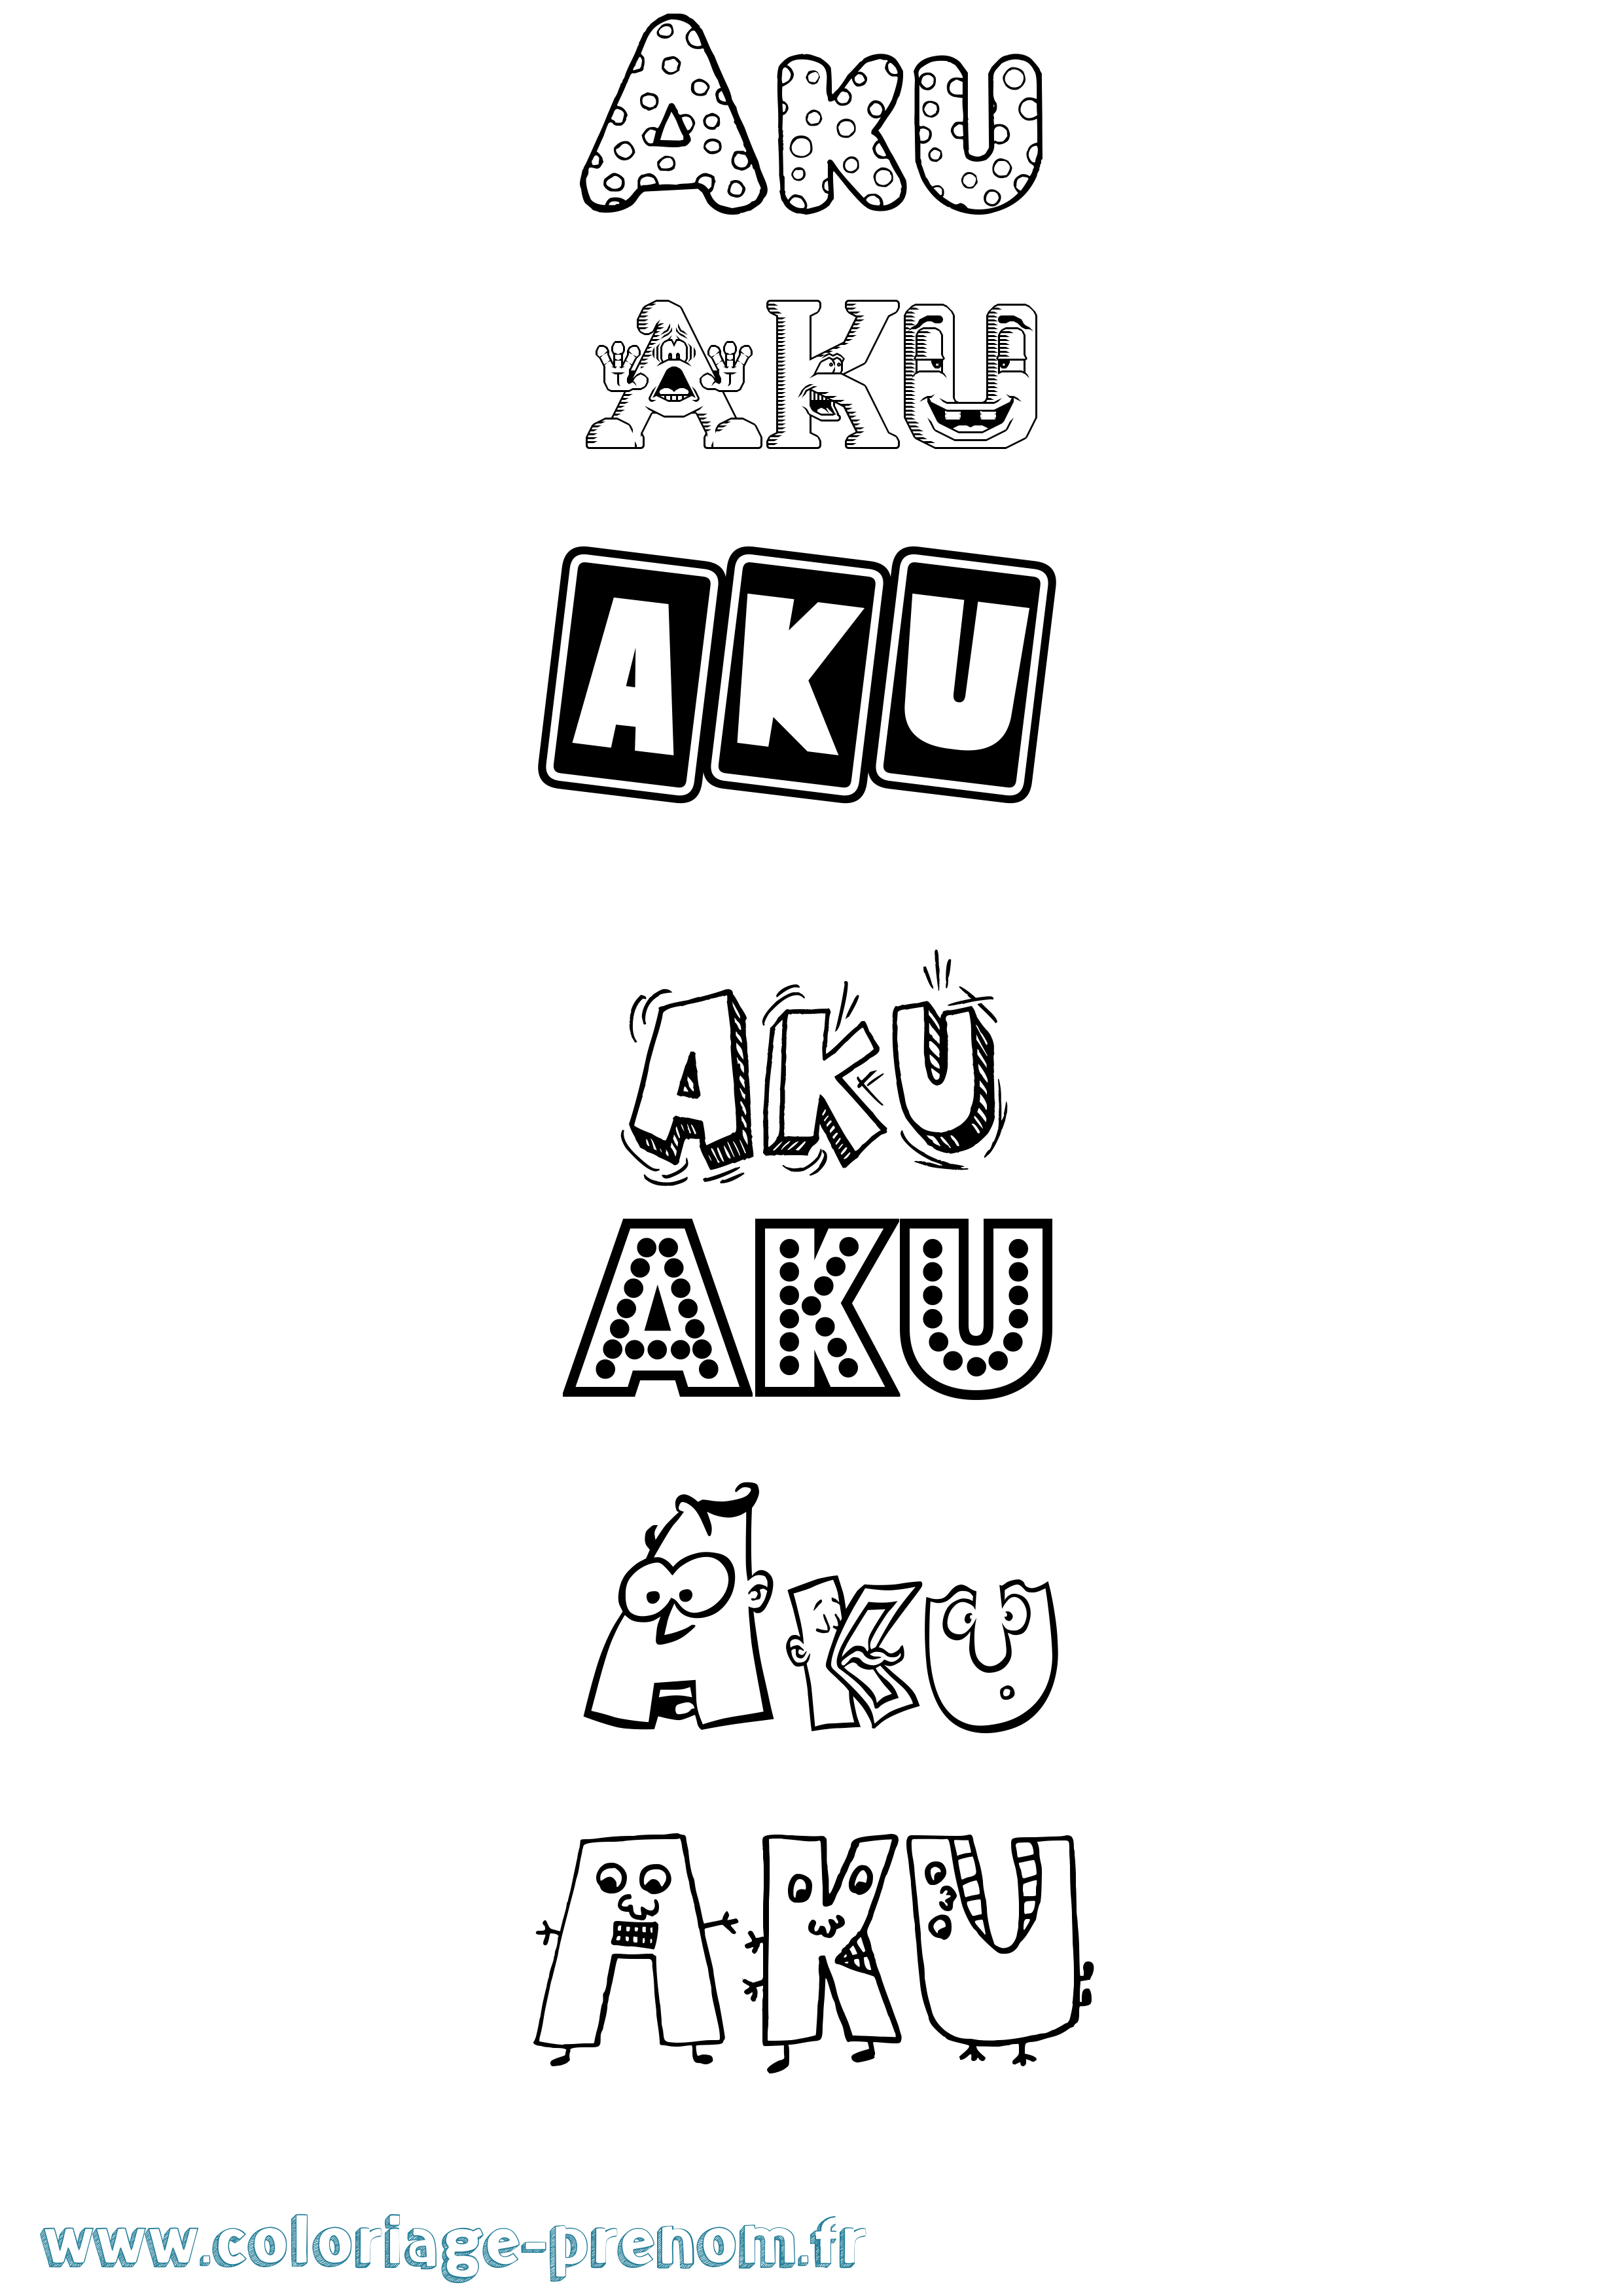 Coloriage prénom Aku Fun